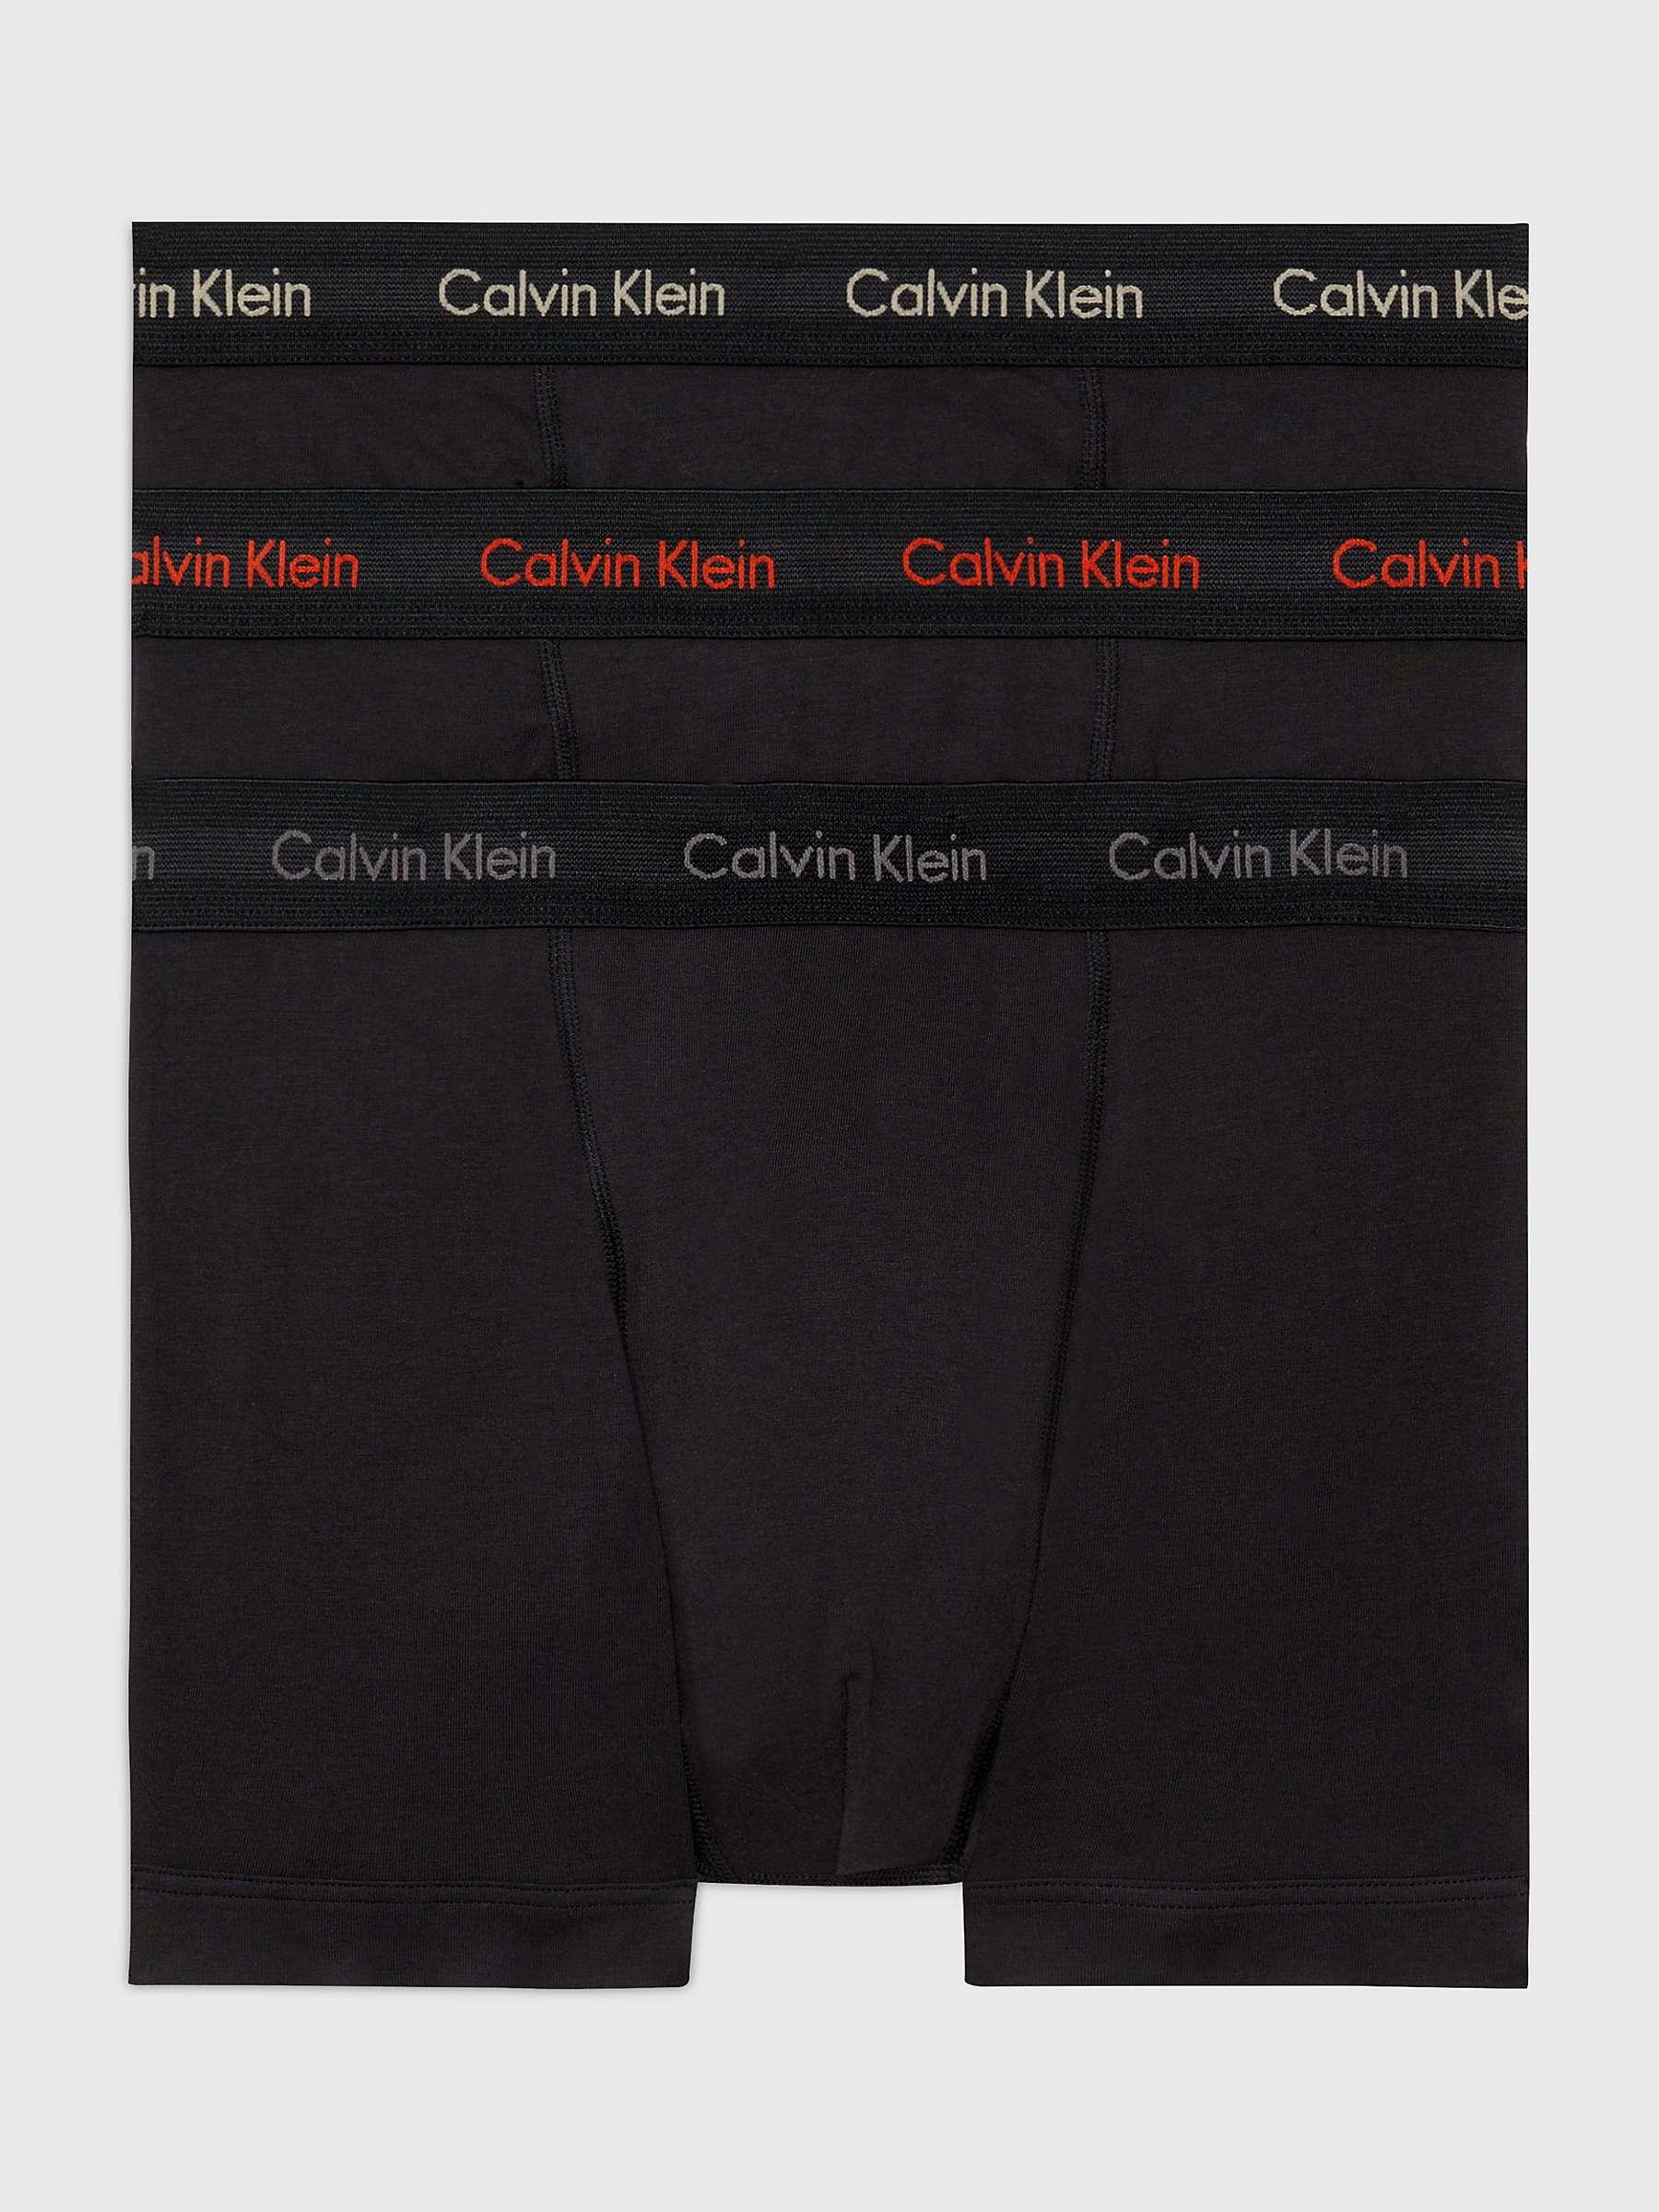 Buy Calvin Klein Plain Trunks, Pack of 3, Black Online at johnlewis.com